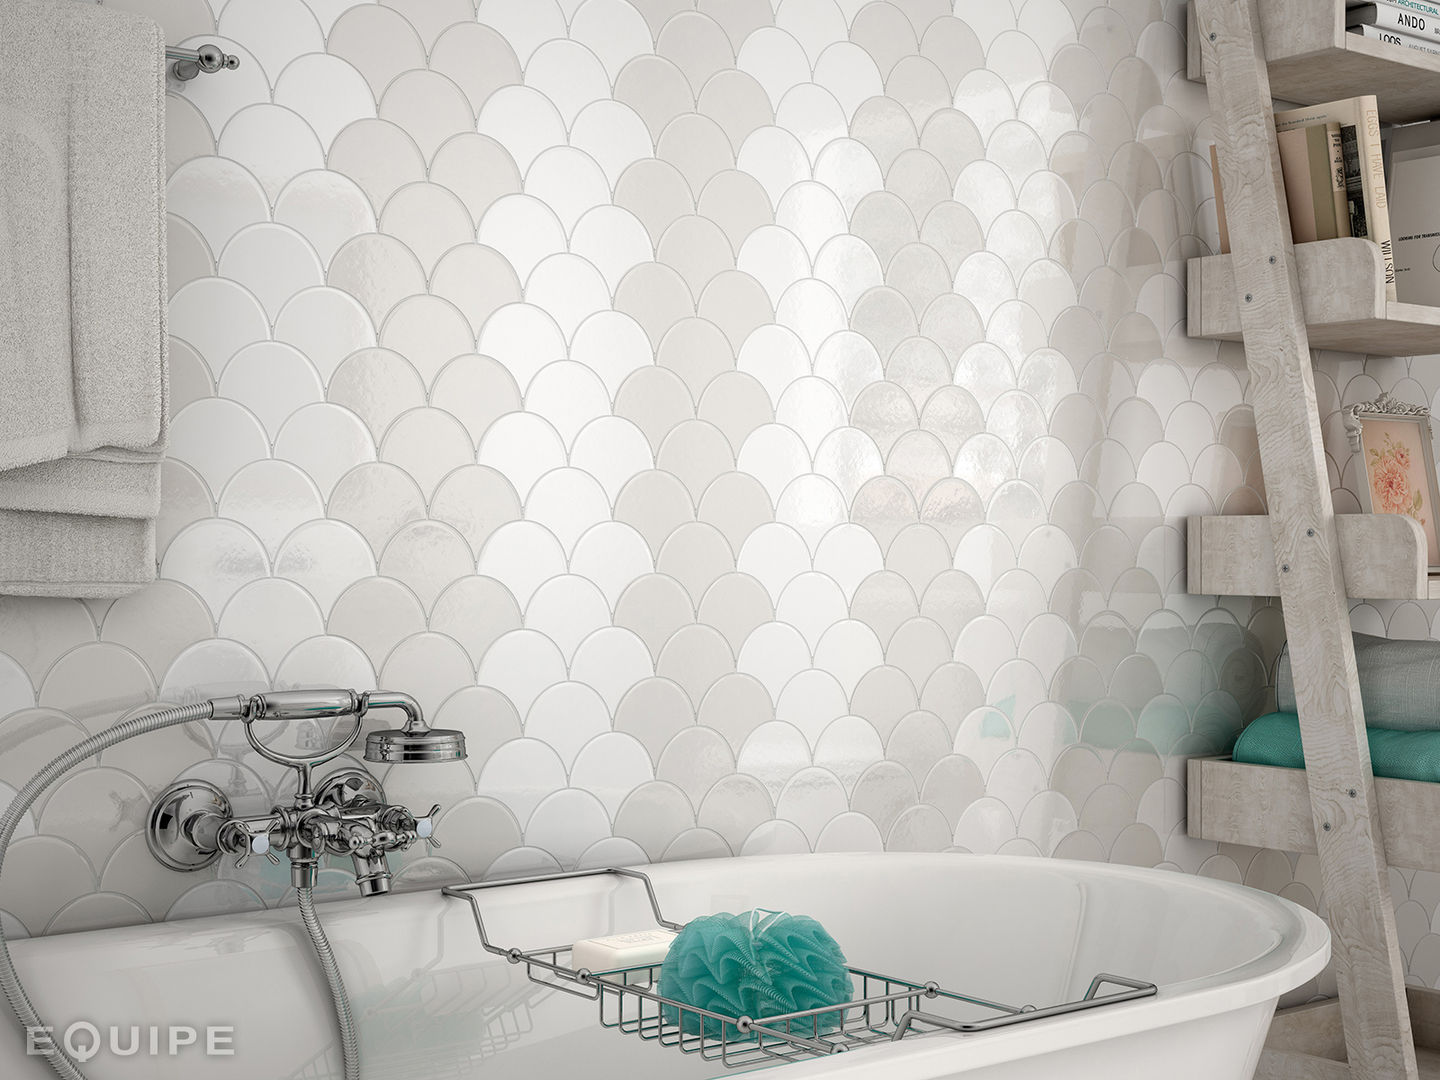 Scale Wall Tile, Equipe Ceramicas Equipe Ceramicas 地中海スタイルの お風呂・バスルーム セラミック